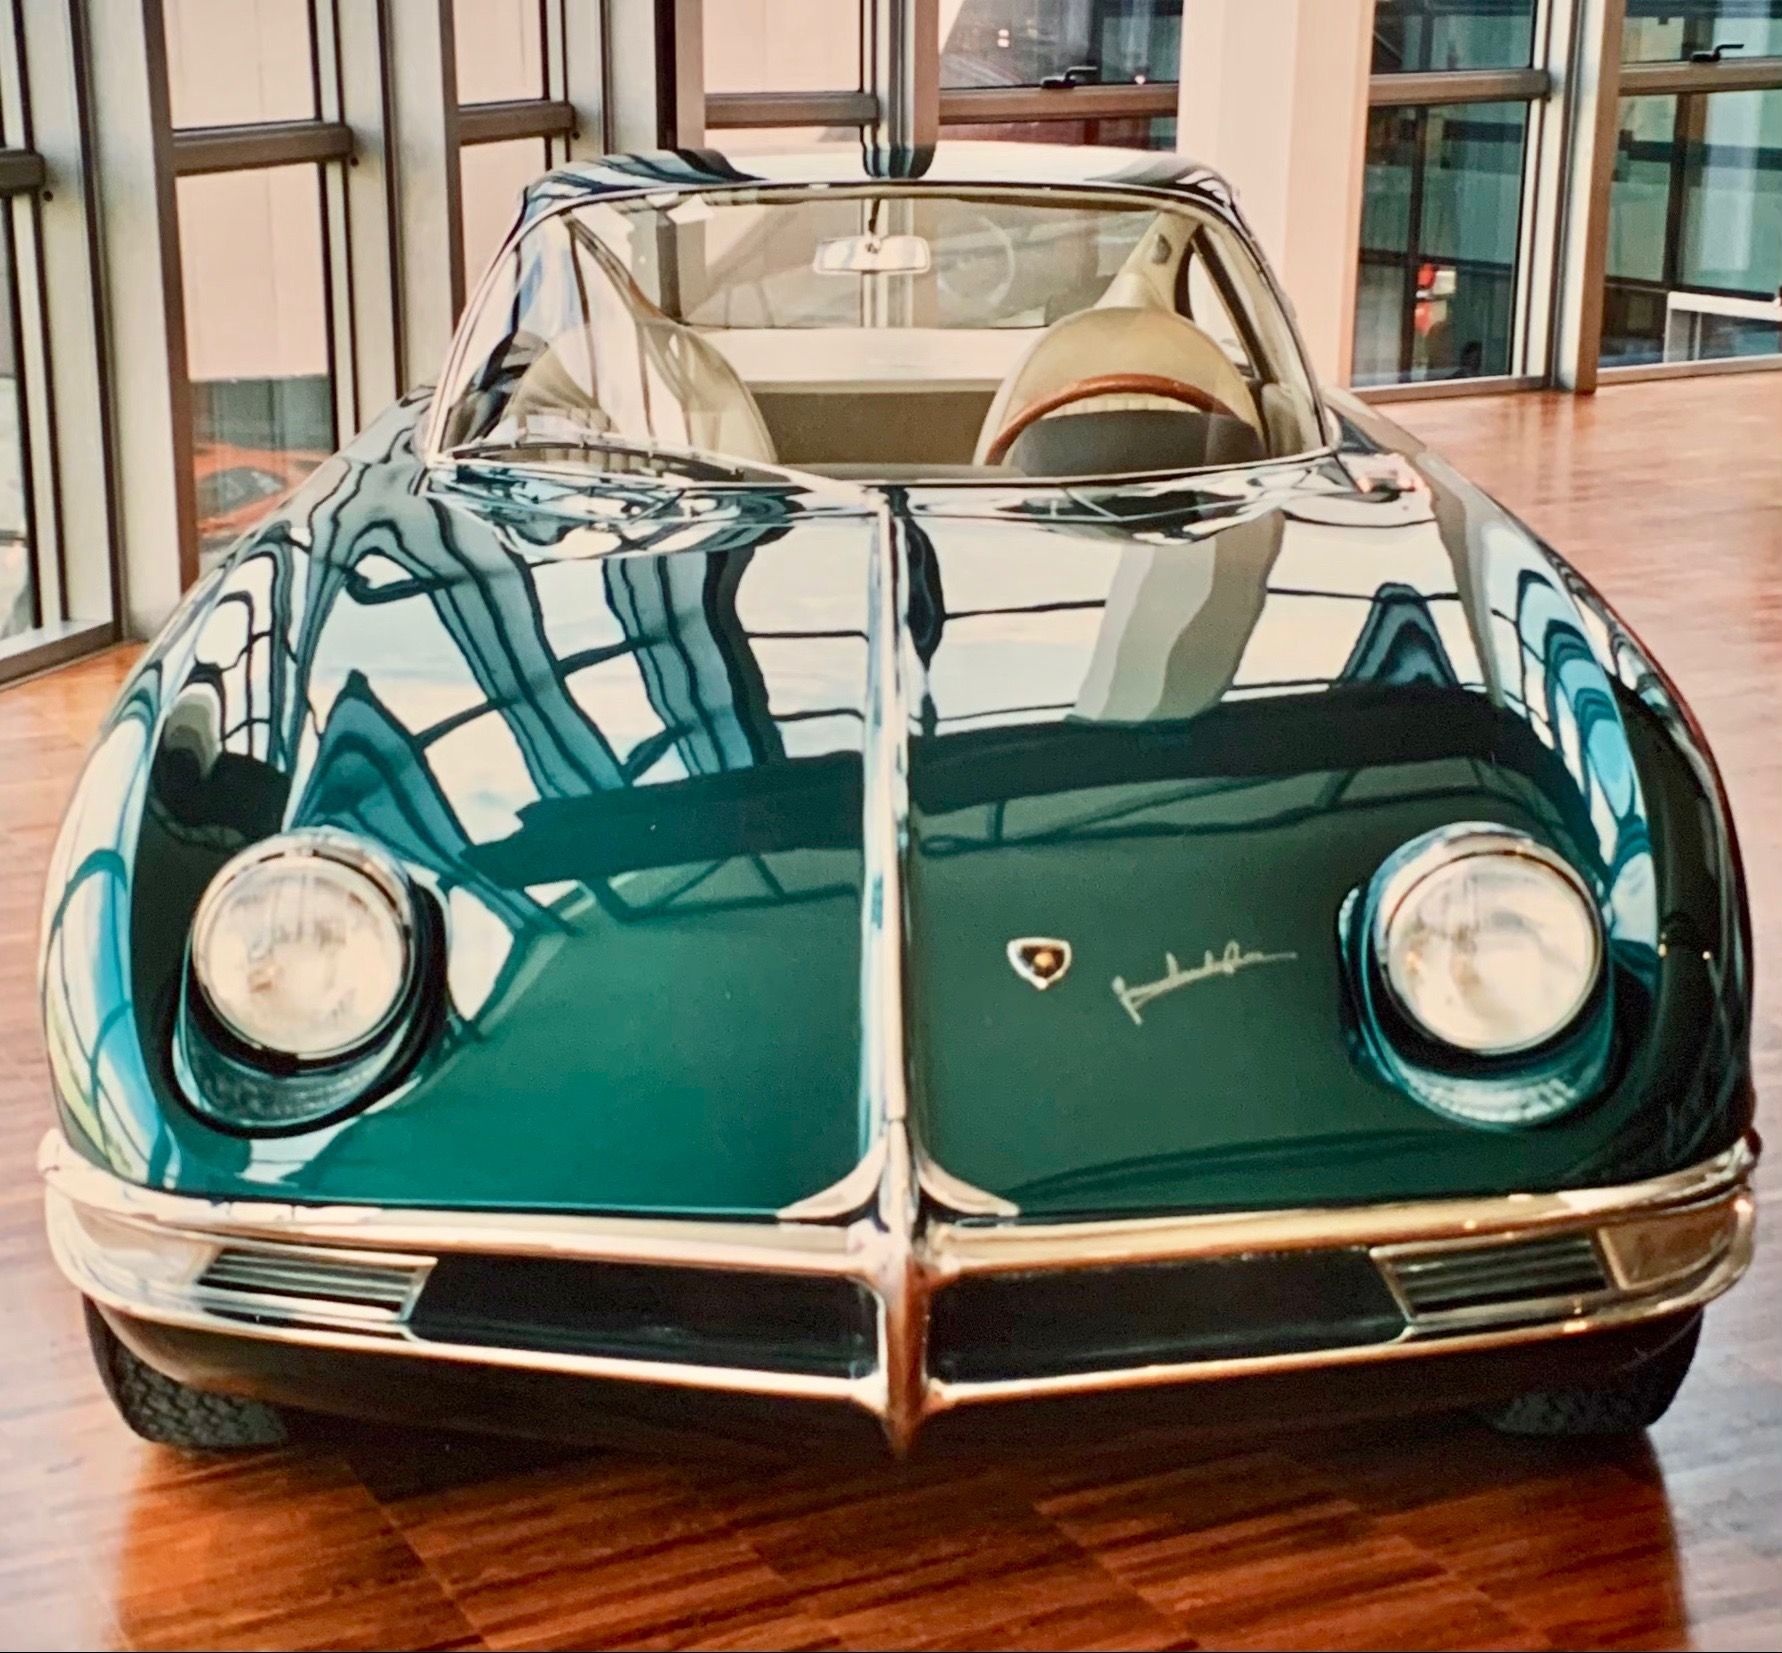 What Was The Original Colour Of The Lamborghini 350 GTV?